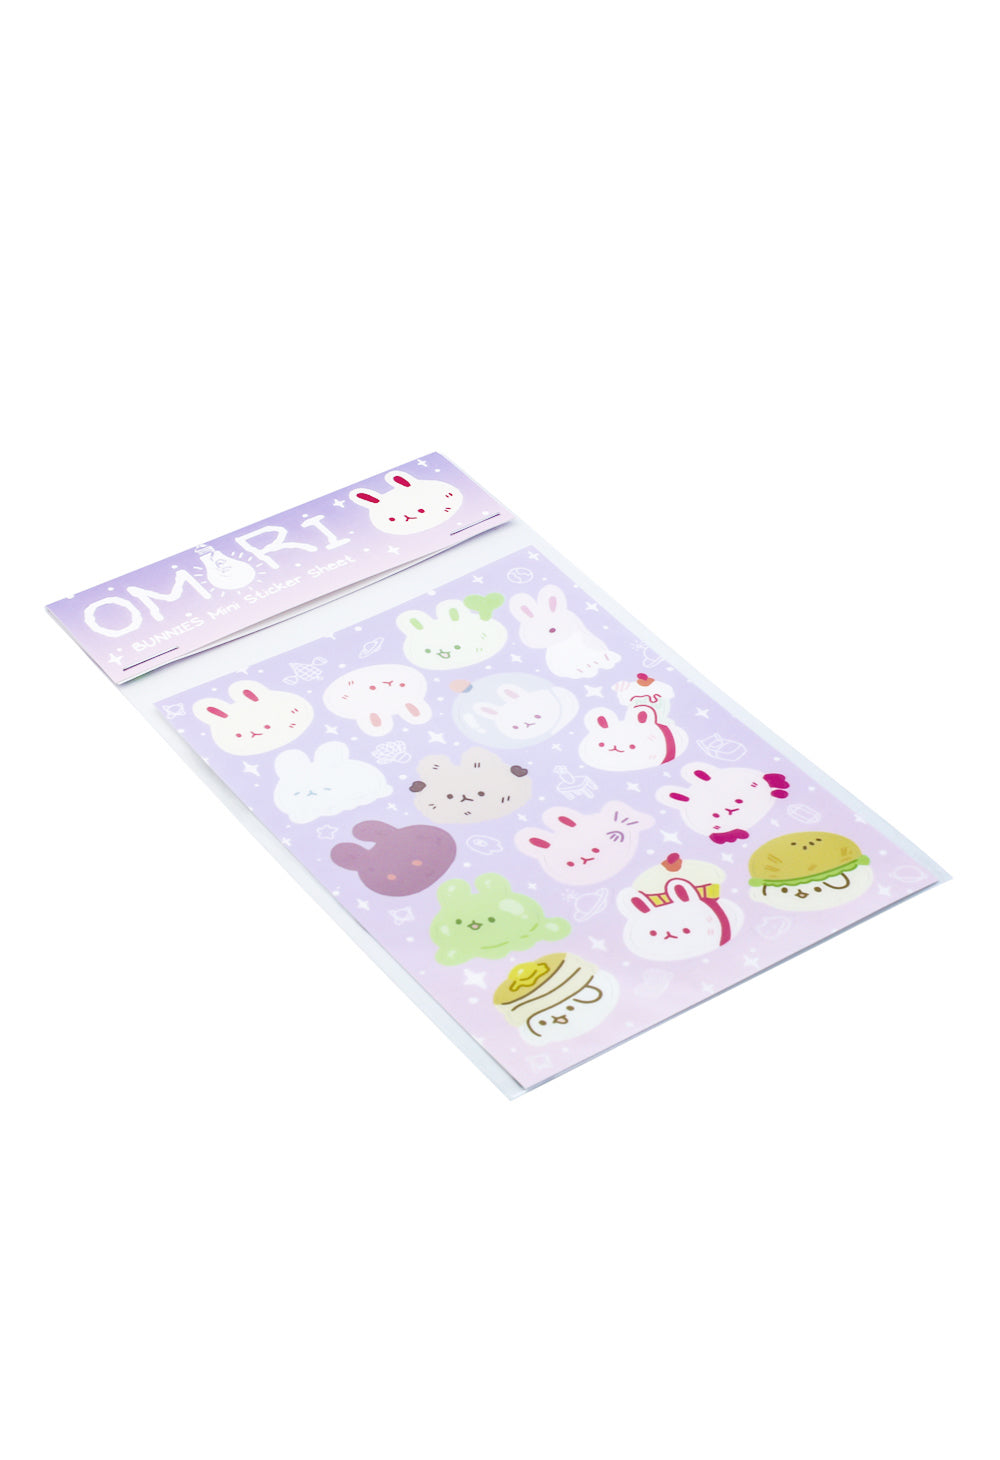 Chibi Sprites (Omori) - Omori - Sticker